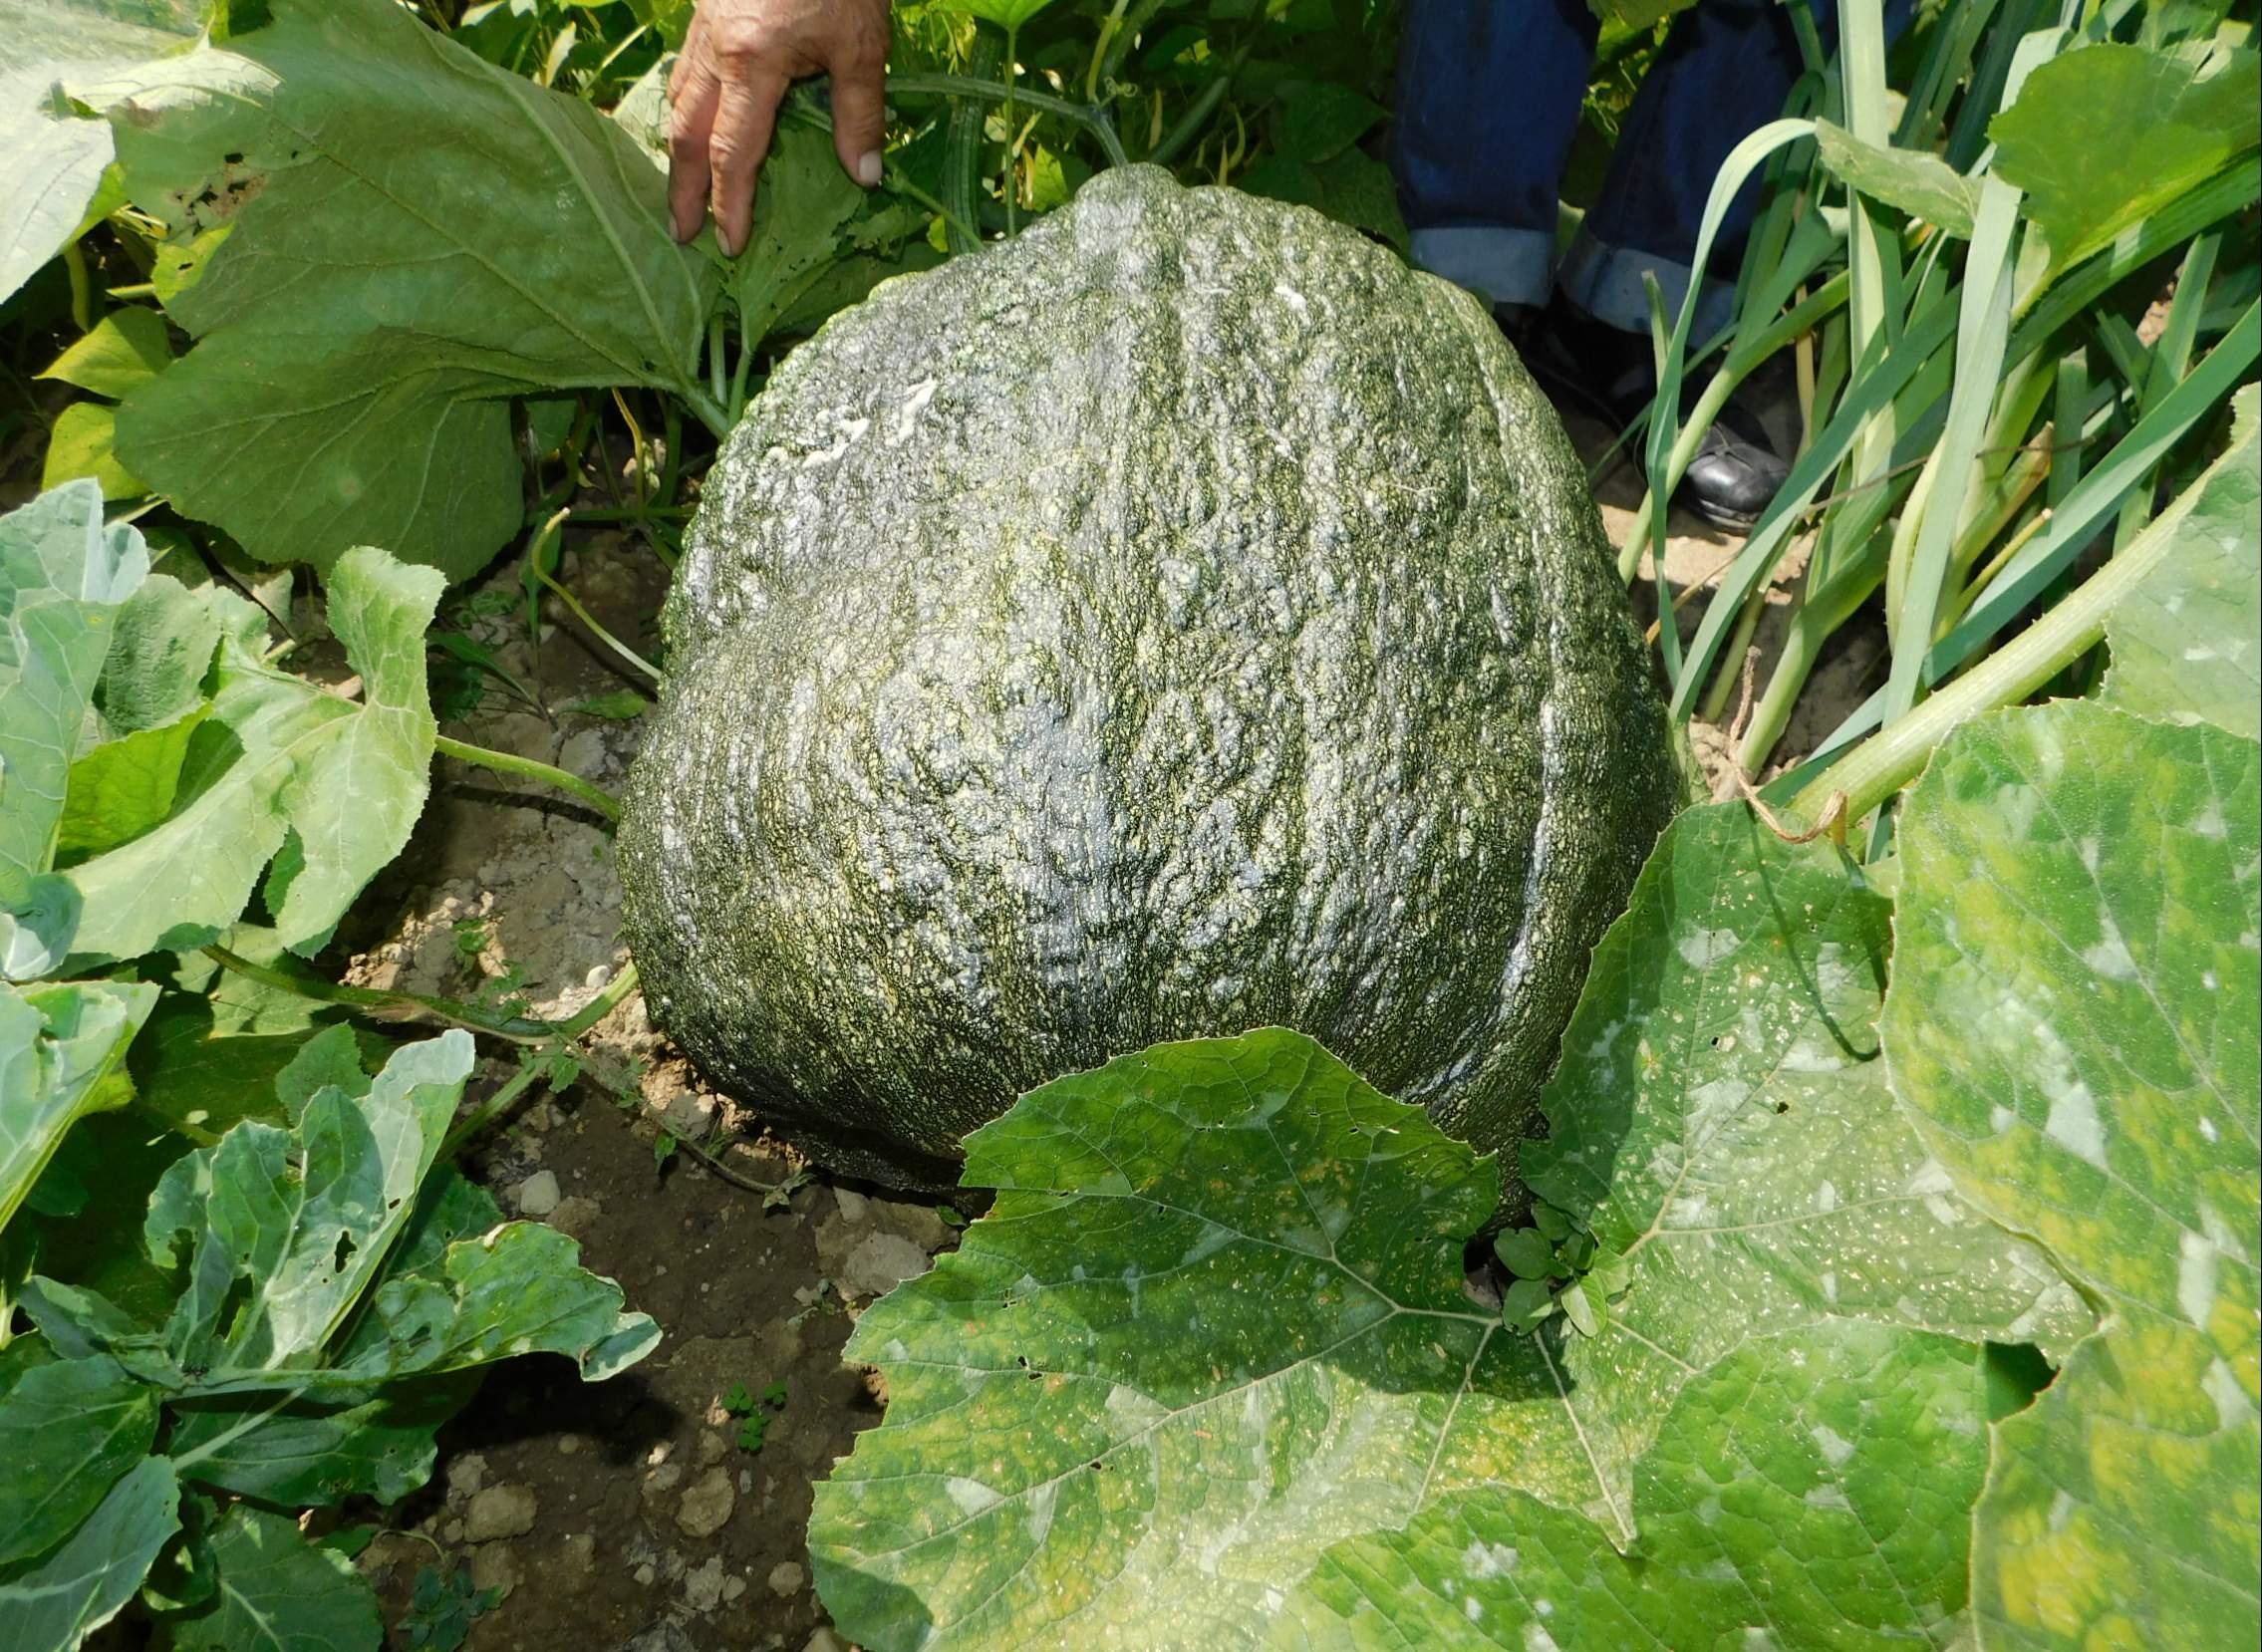 Jusuf Redžo iz Vogošće u svojoj bašti uzgojio tikvu težu od 50 kilograma